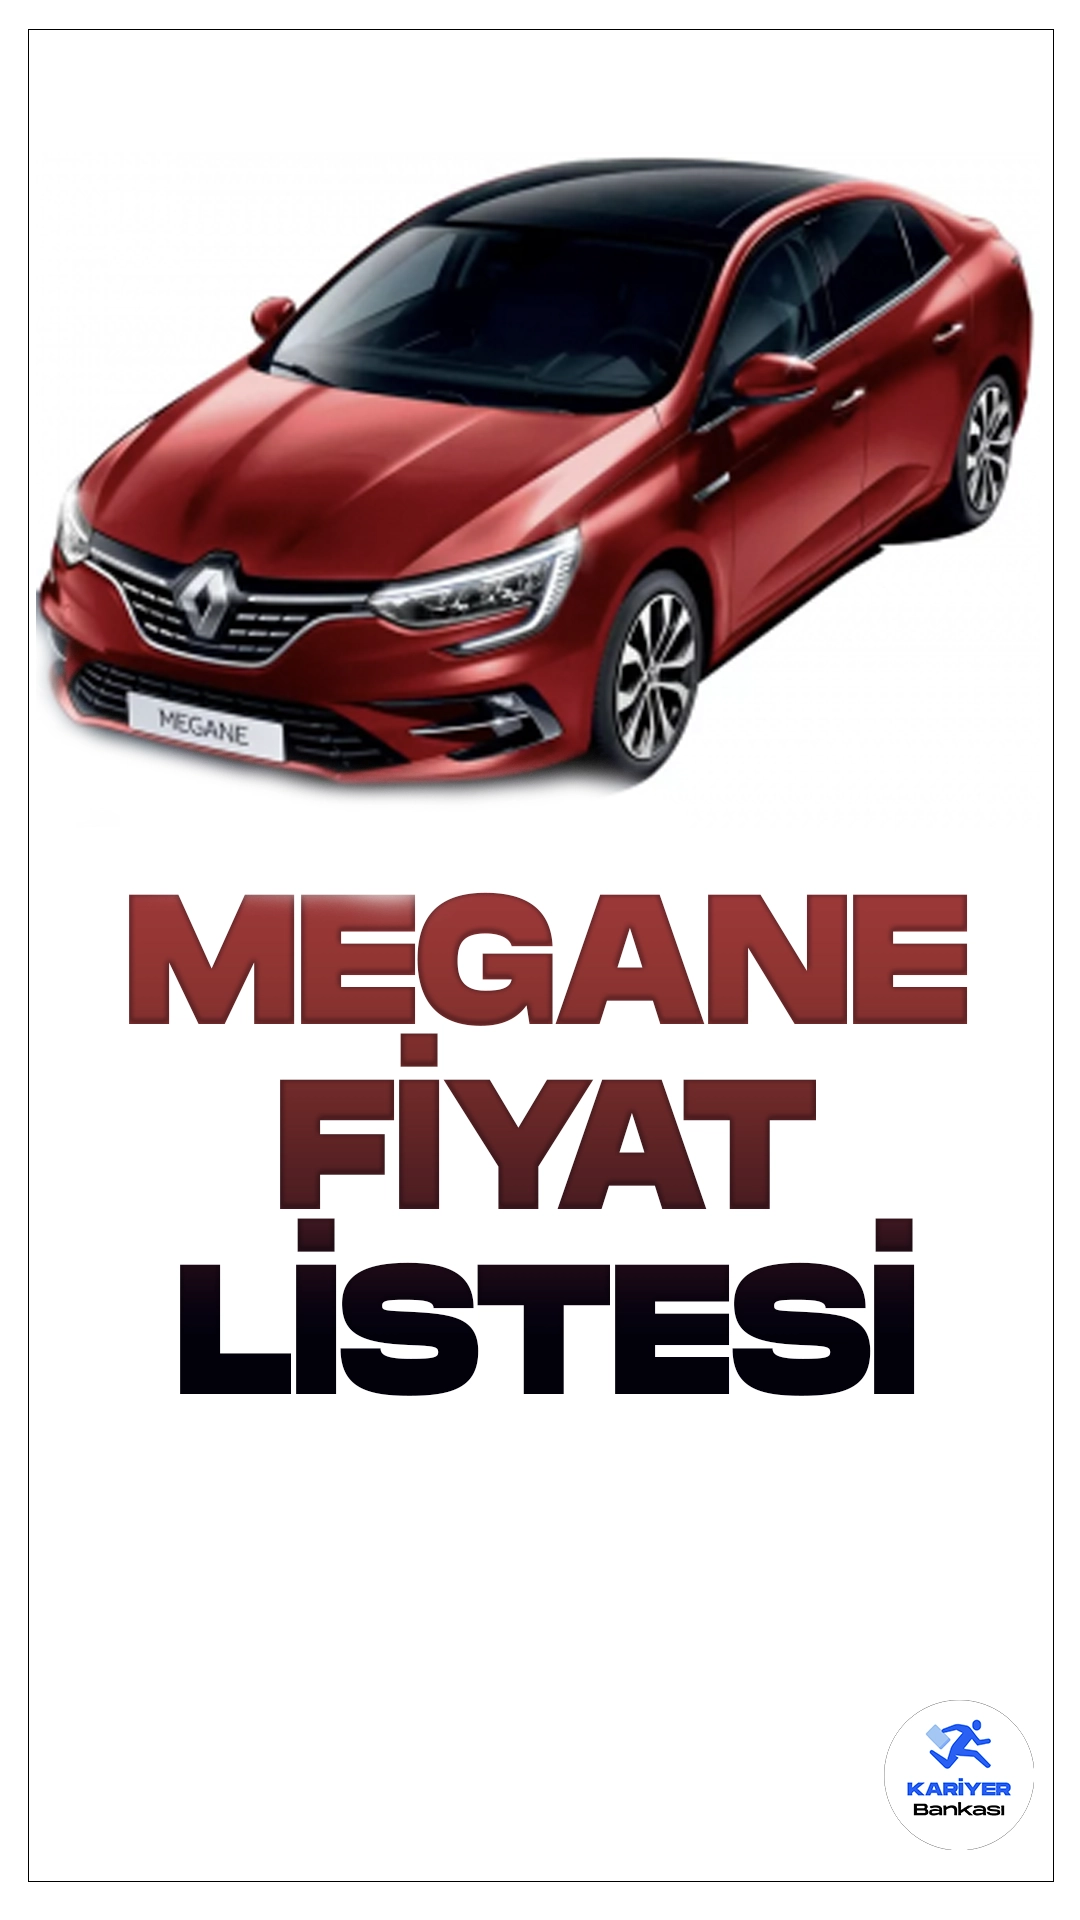 Renault Megane Mart 2024 Fiyat Listesi Yayımlandı.Yeniliklerle dolu bir otomobil deneyimi sunan Renault Megane, kullanıcılarına güçlü performansı ve modern tasarımıyla etkileyici bir sürüş deneyimi vaat ediyor. Yenilikçi teknolojileri ve çevre dostu özellikleriyle dikkat çeken Megane, otomobil tutkunlarını kendine çekmeye devam ediyor.